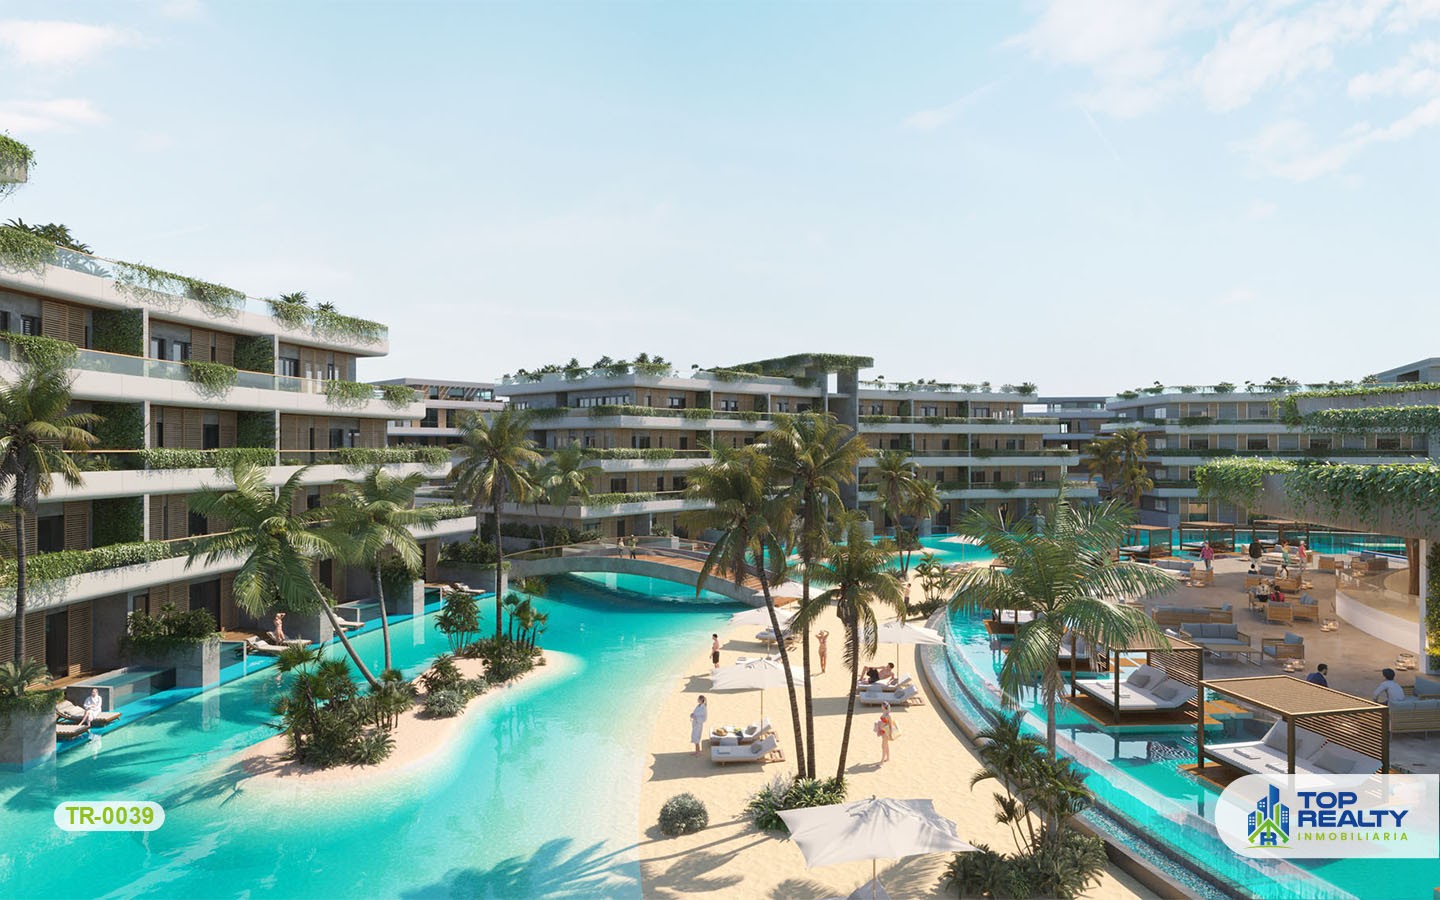 apartamentos - TR-0039: Inversión ideal en Punta Cana: vive el ambiente cosmopolita del Caribe.